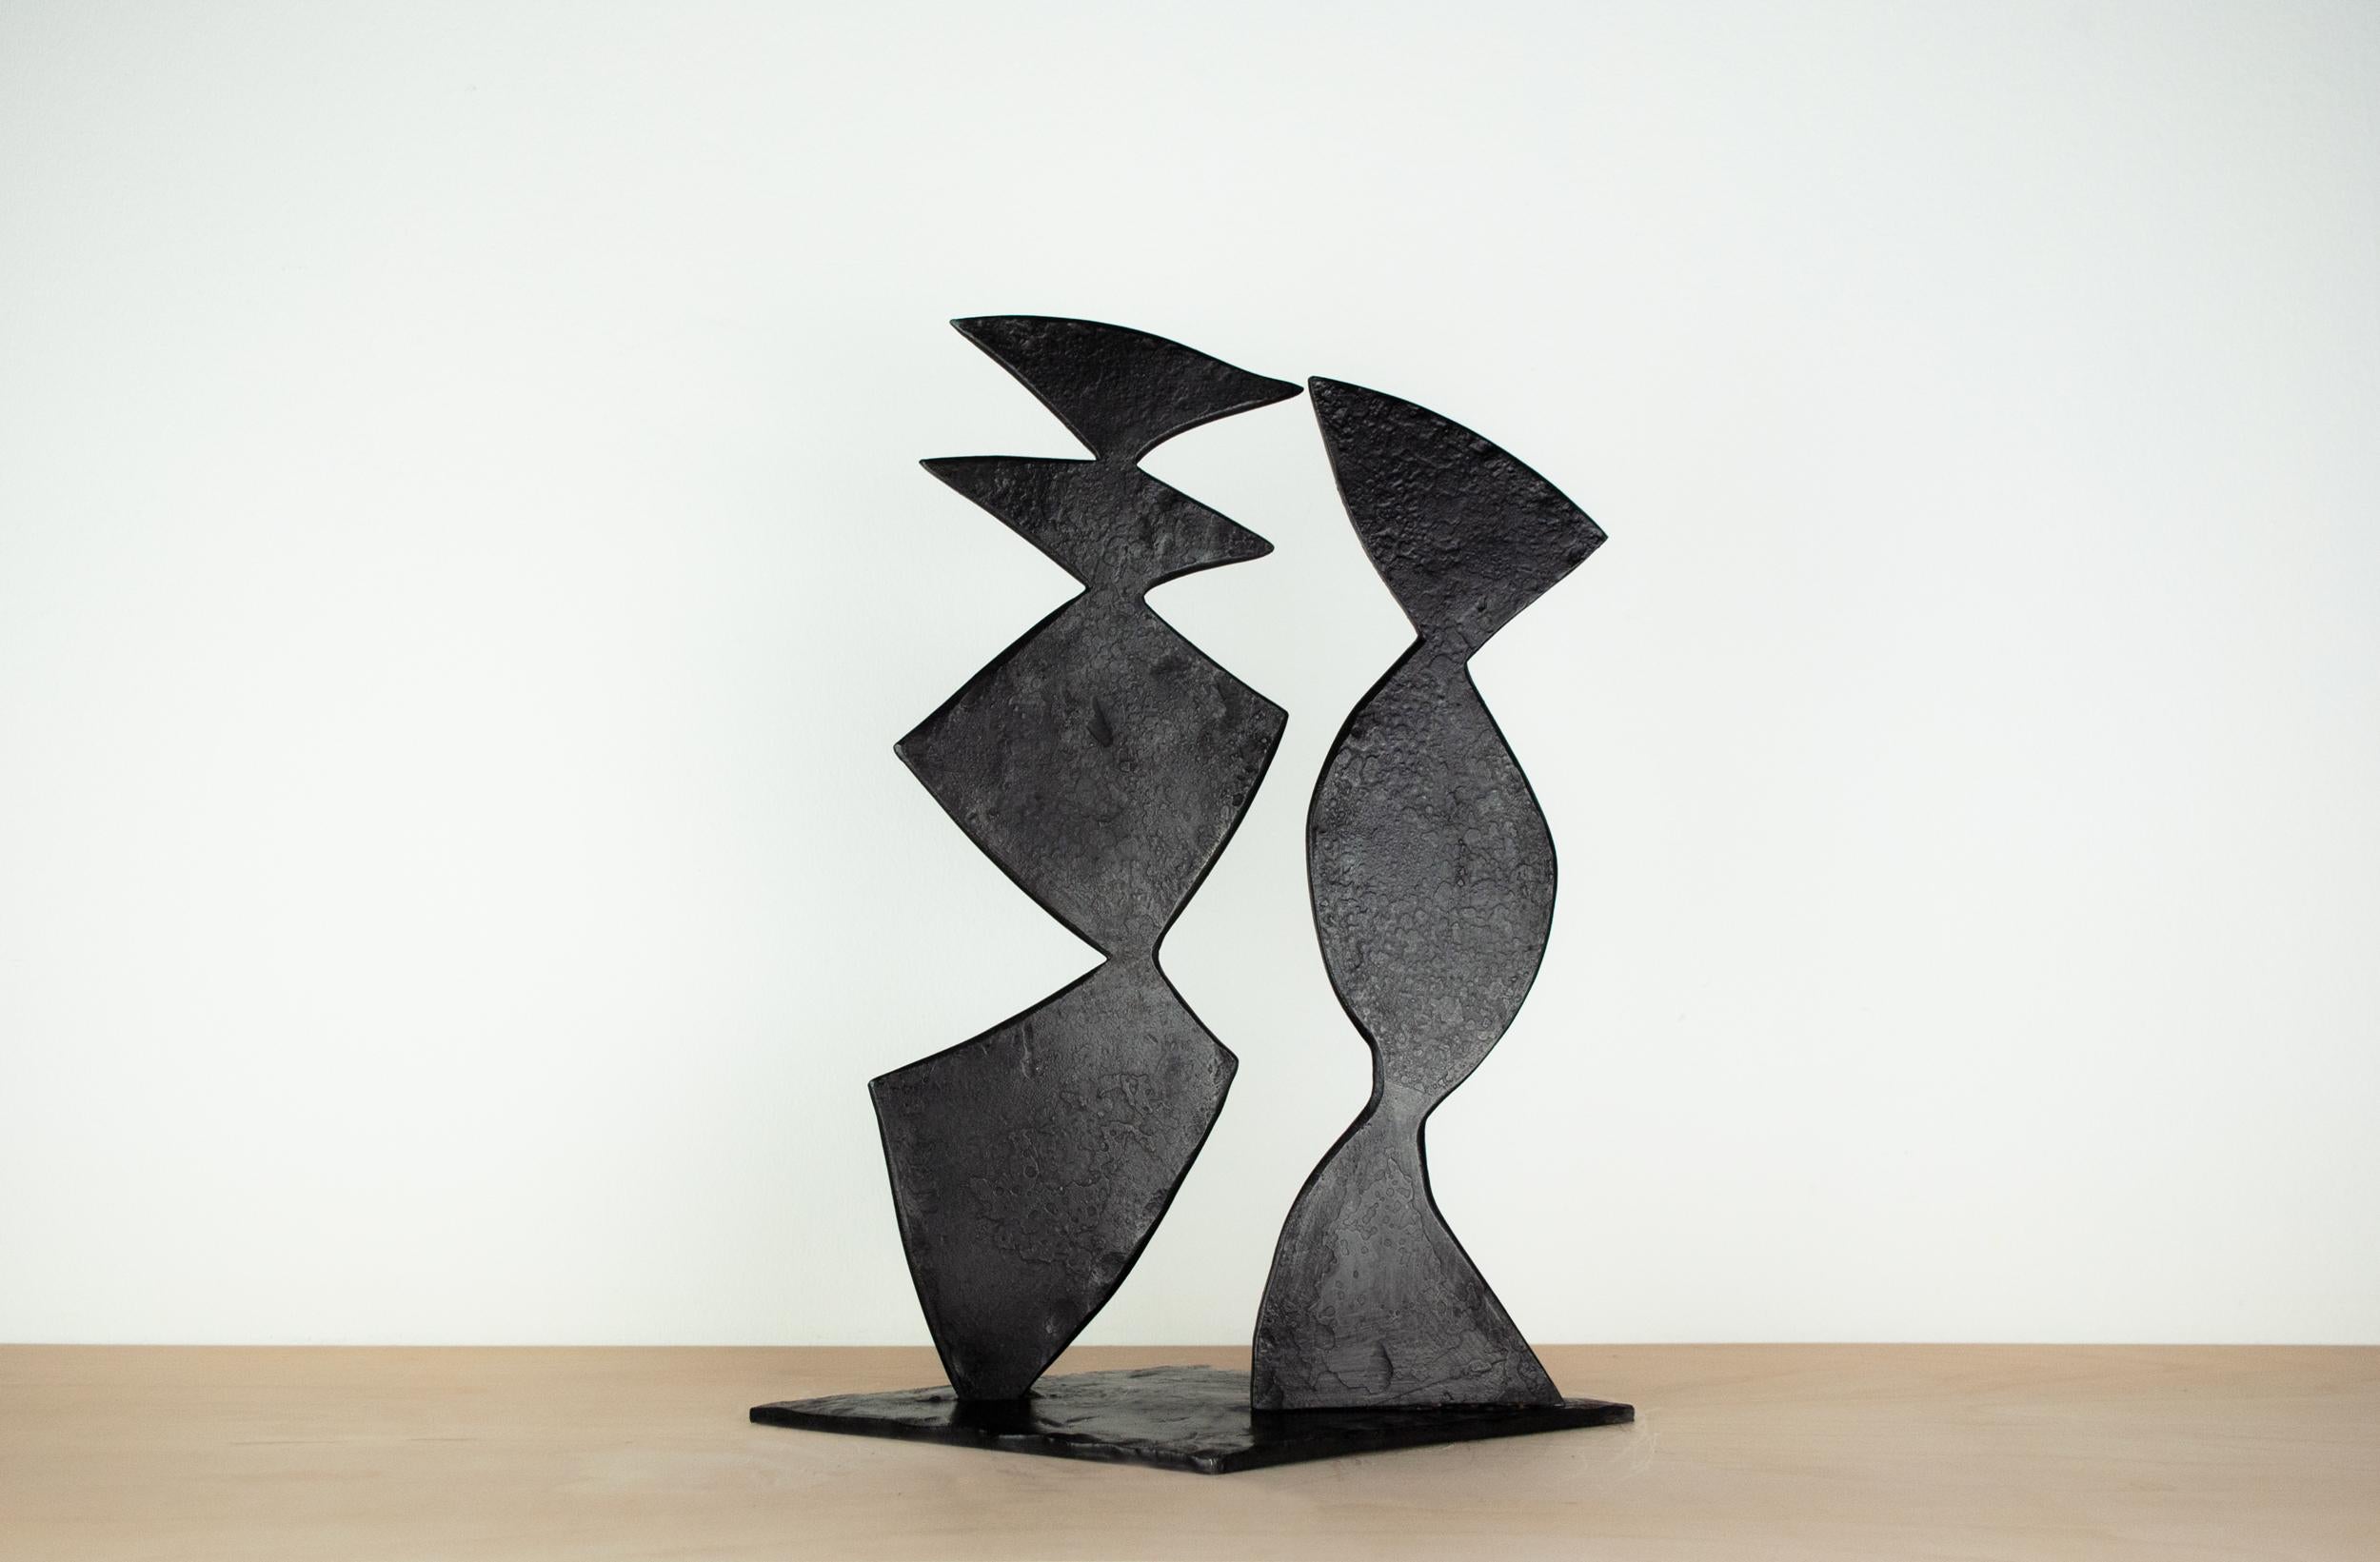 Sculpture abstraite en acier forgé noir. Composition de deux formes abstraites reposant sur une base en forme de diamant. Les formes sont inclinées les unes par rapport aux autres pour exprimer une relation tridimensionnelle. Les deux formes créent